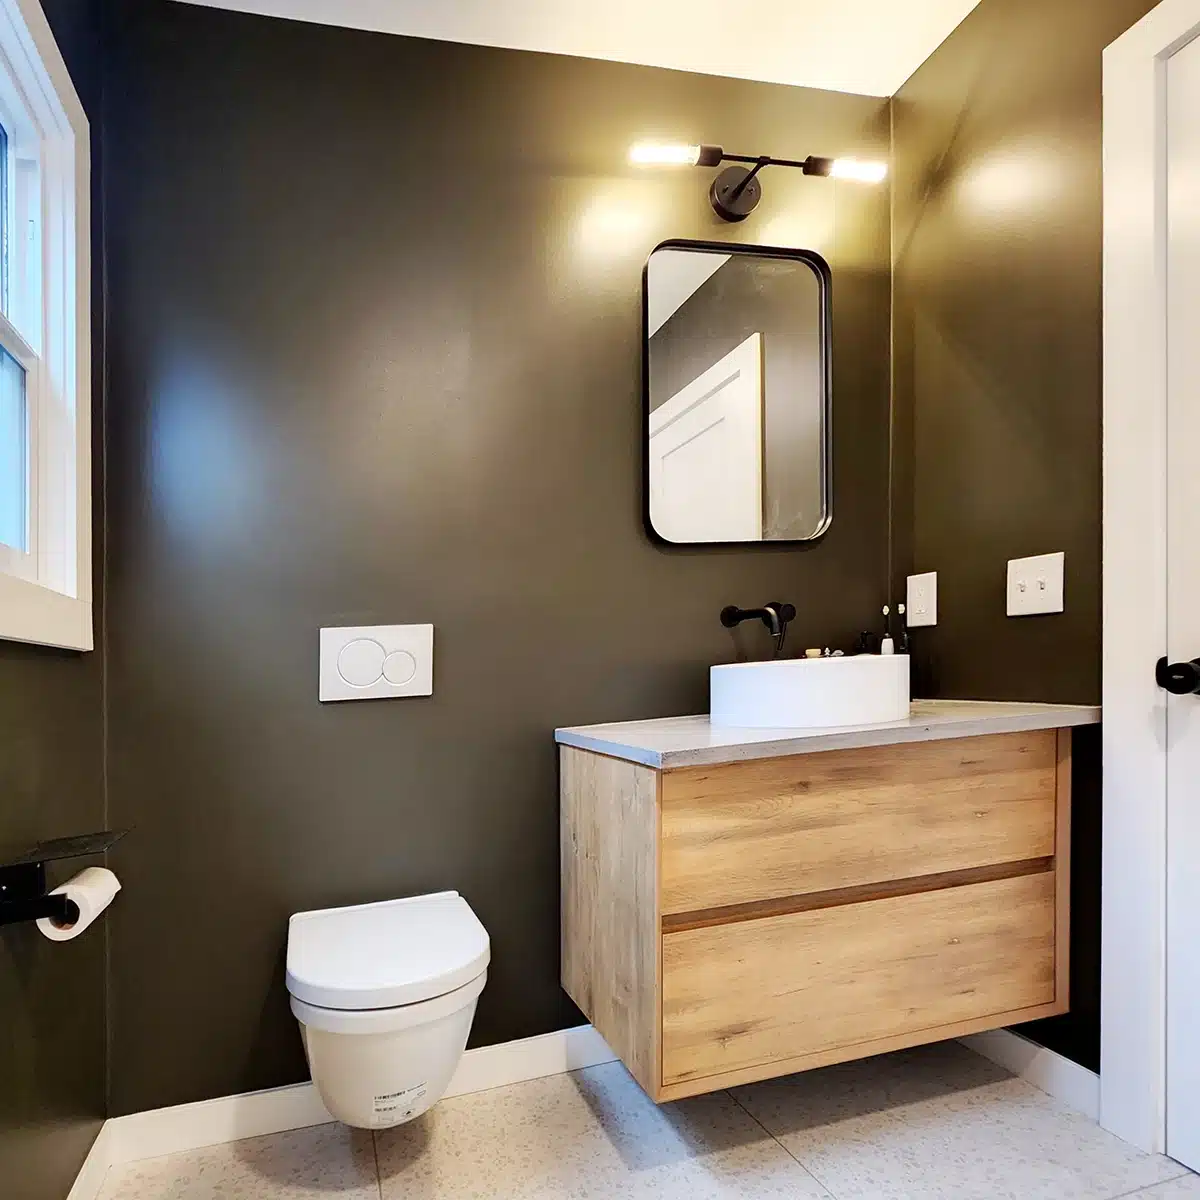 Elegant bathroom with dark walls, wooden vanity, and modern fixtures.